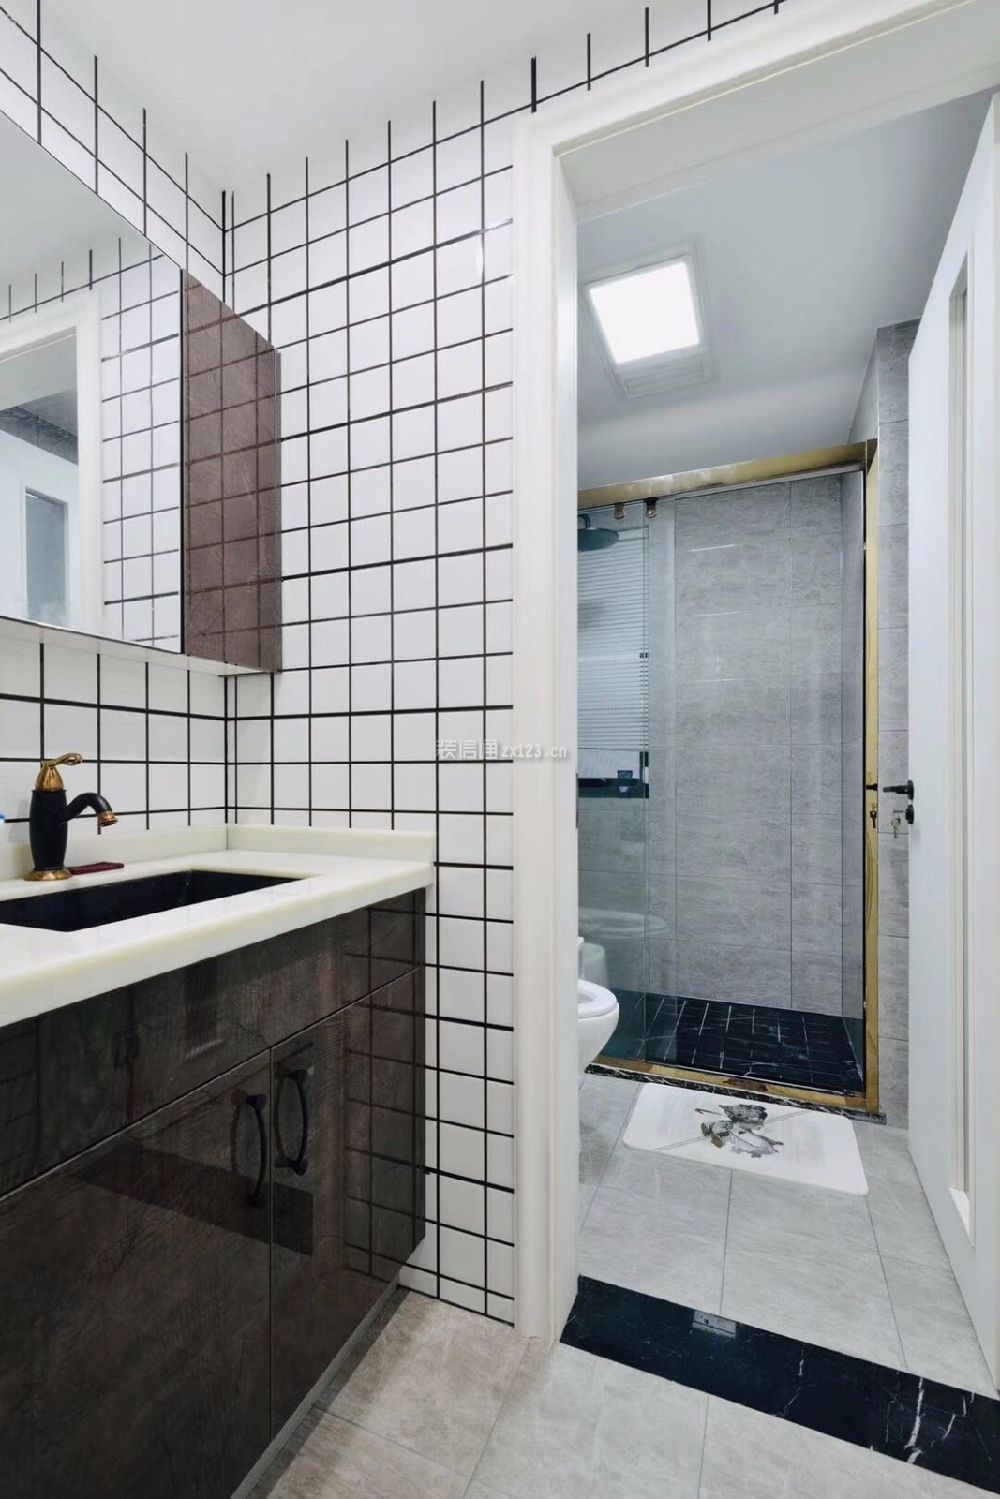 美式卫生间装饰效果图 美式卫生间瓷砖